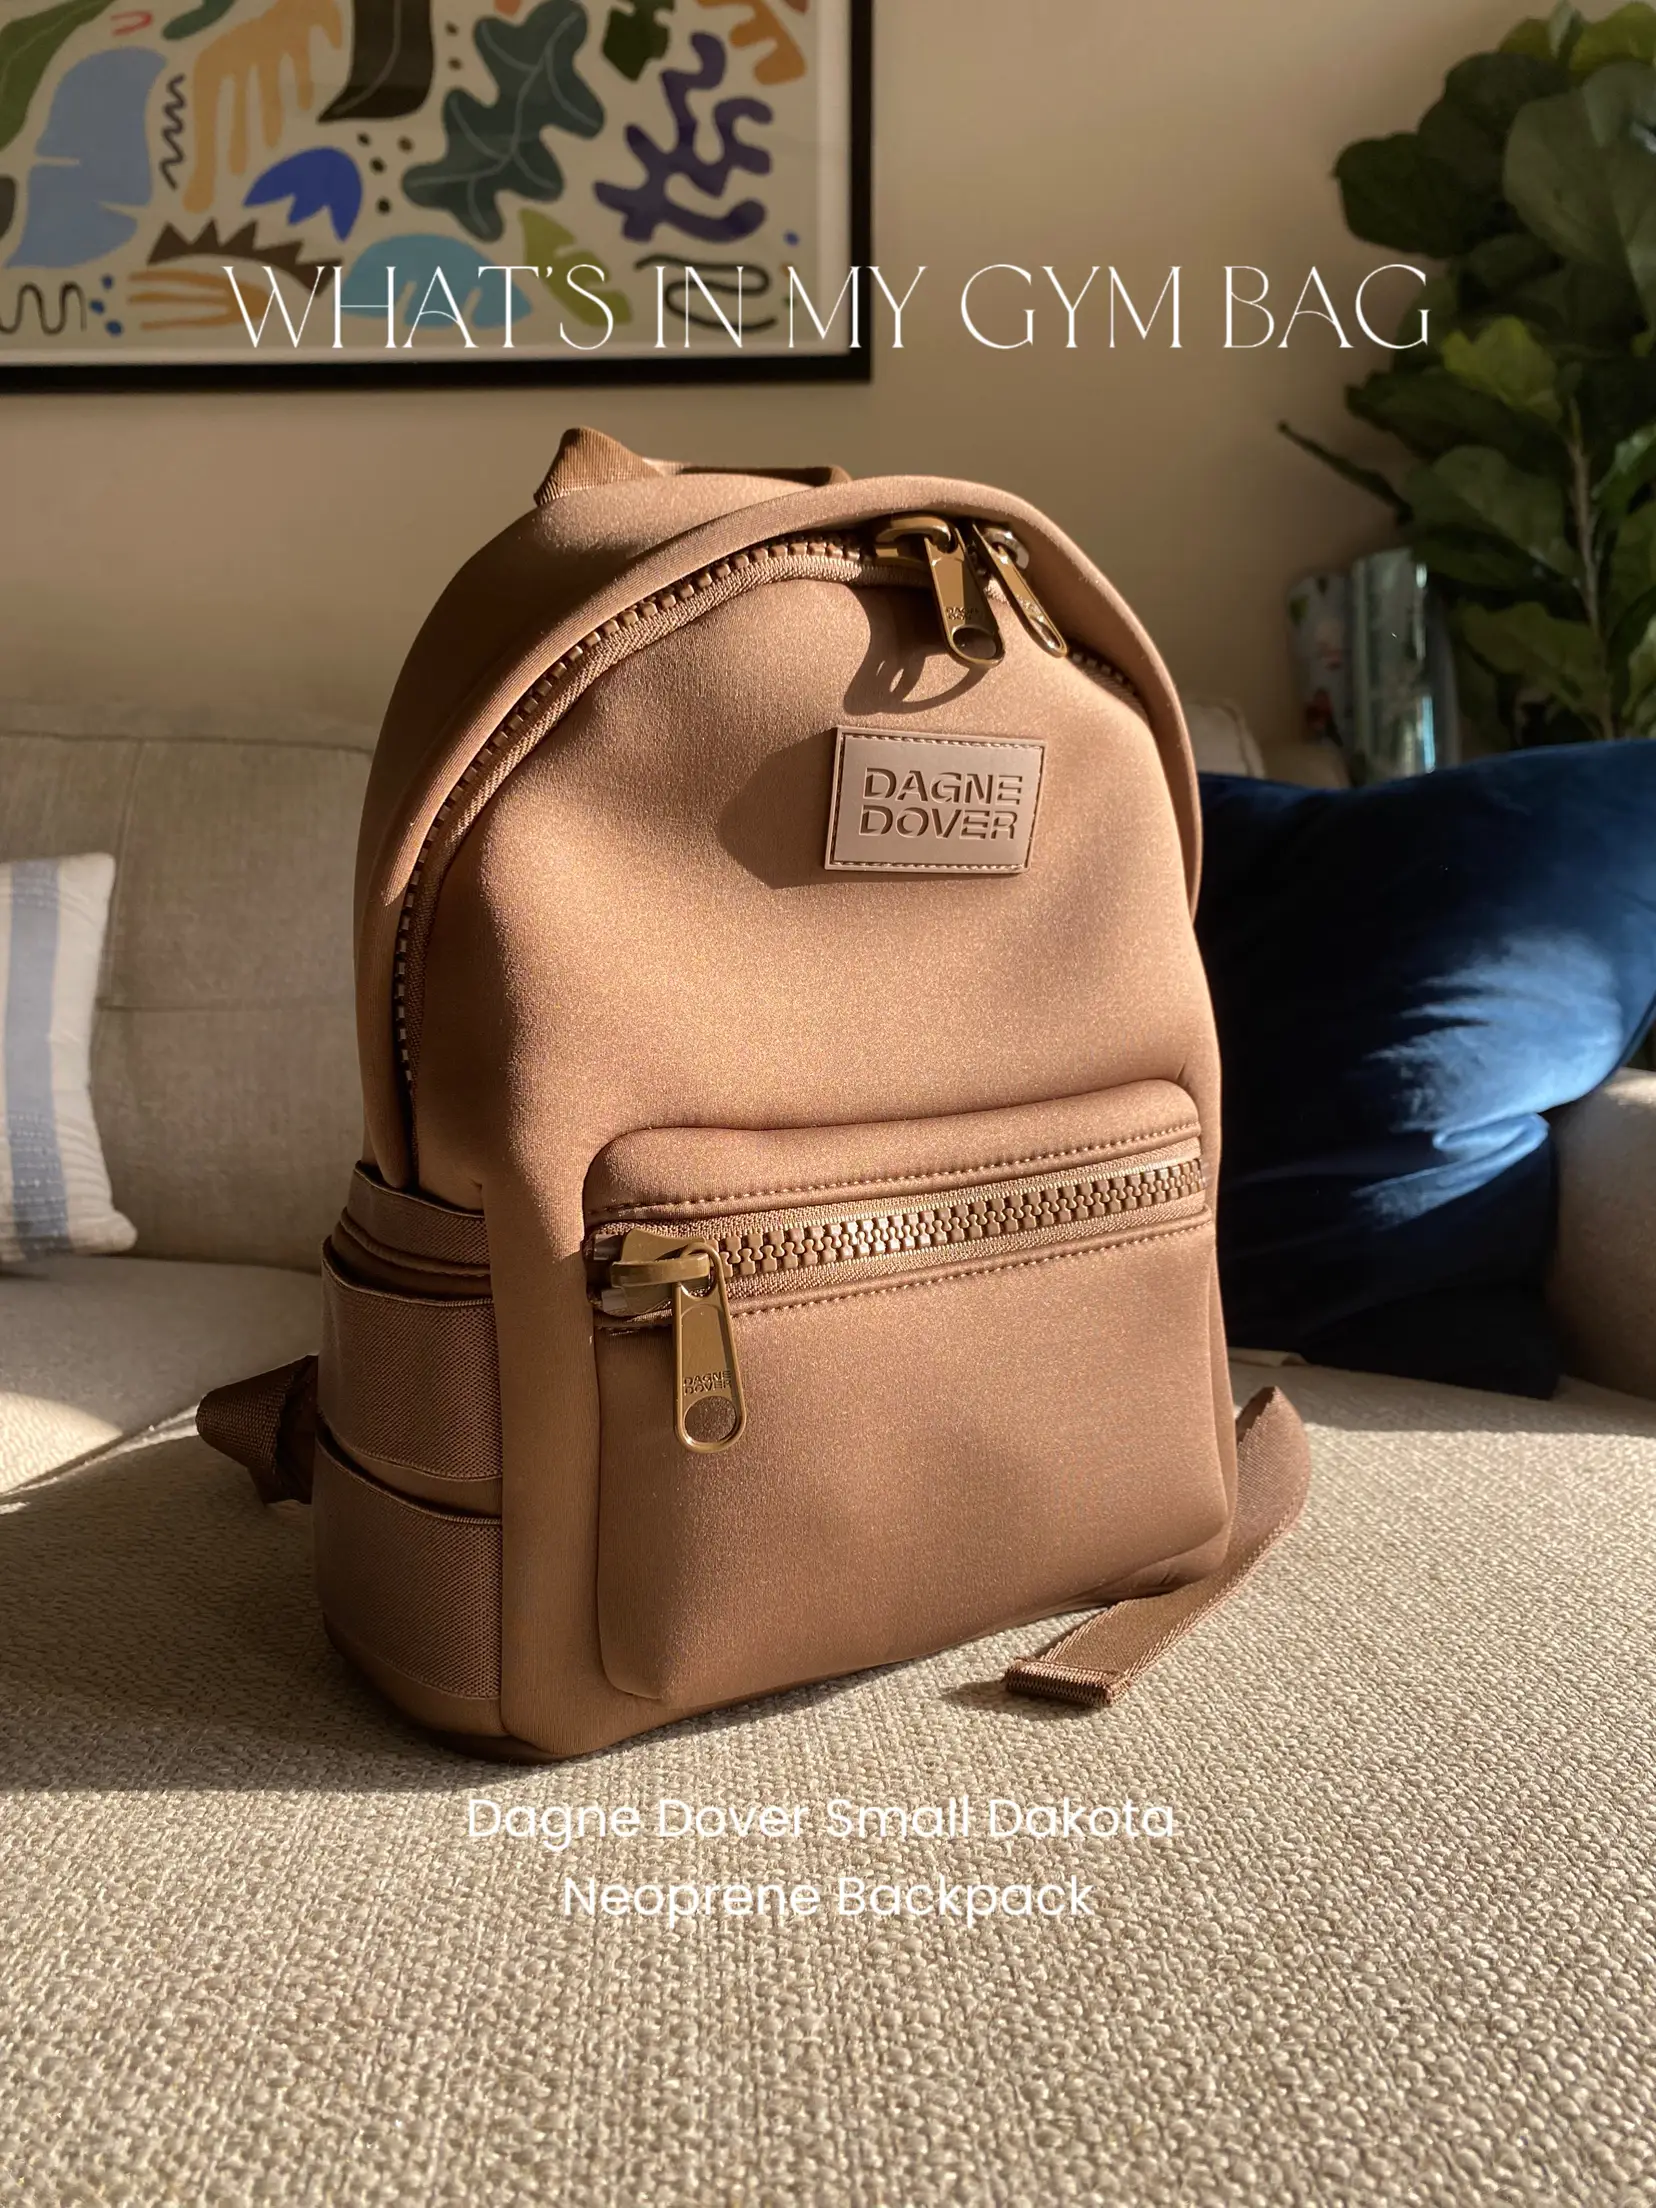 Safe Anti-pickpocket Bag FREE sewing pattern & videos - Sew Modern